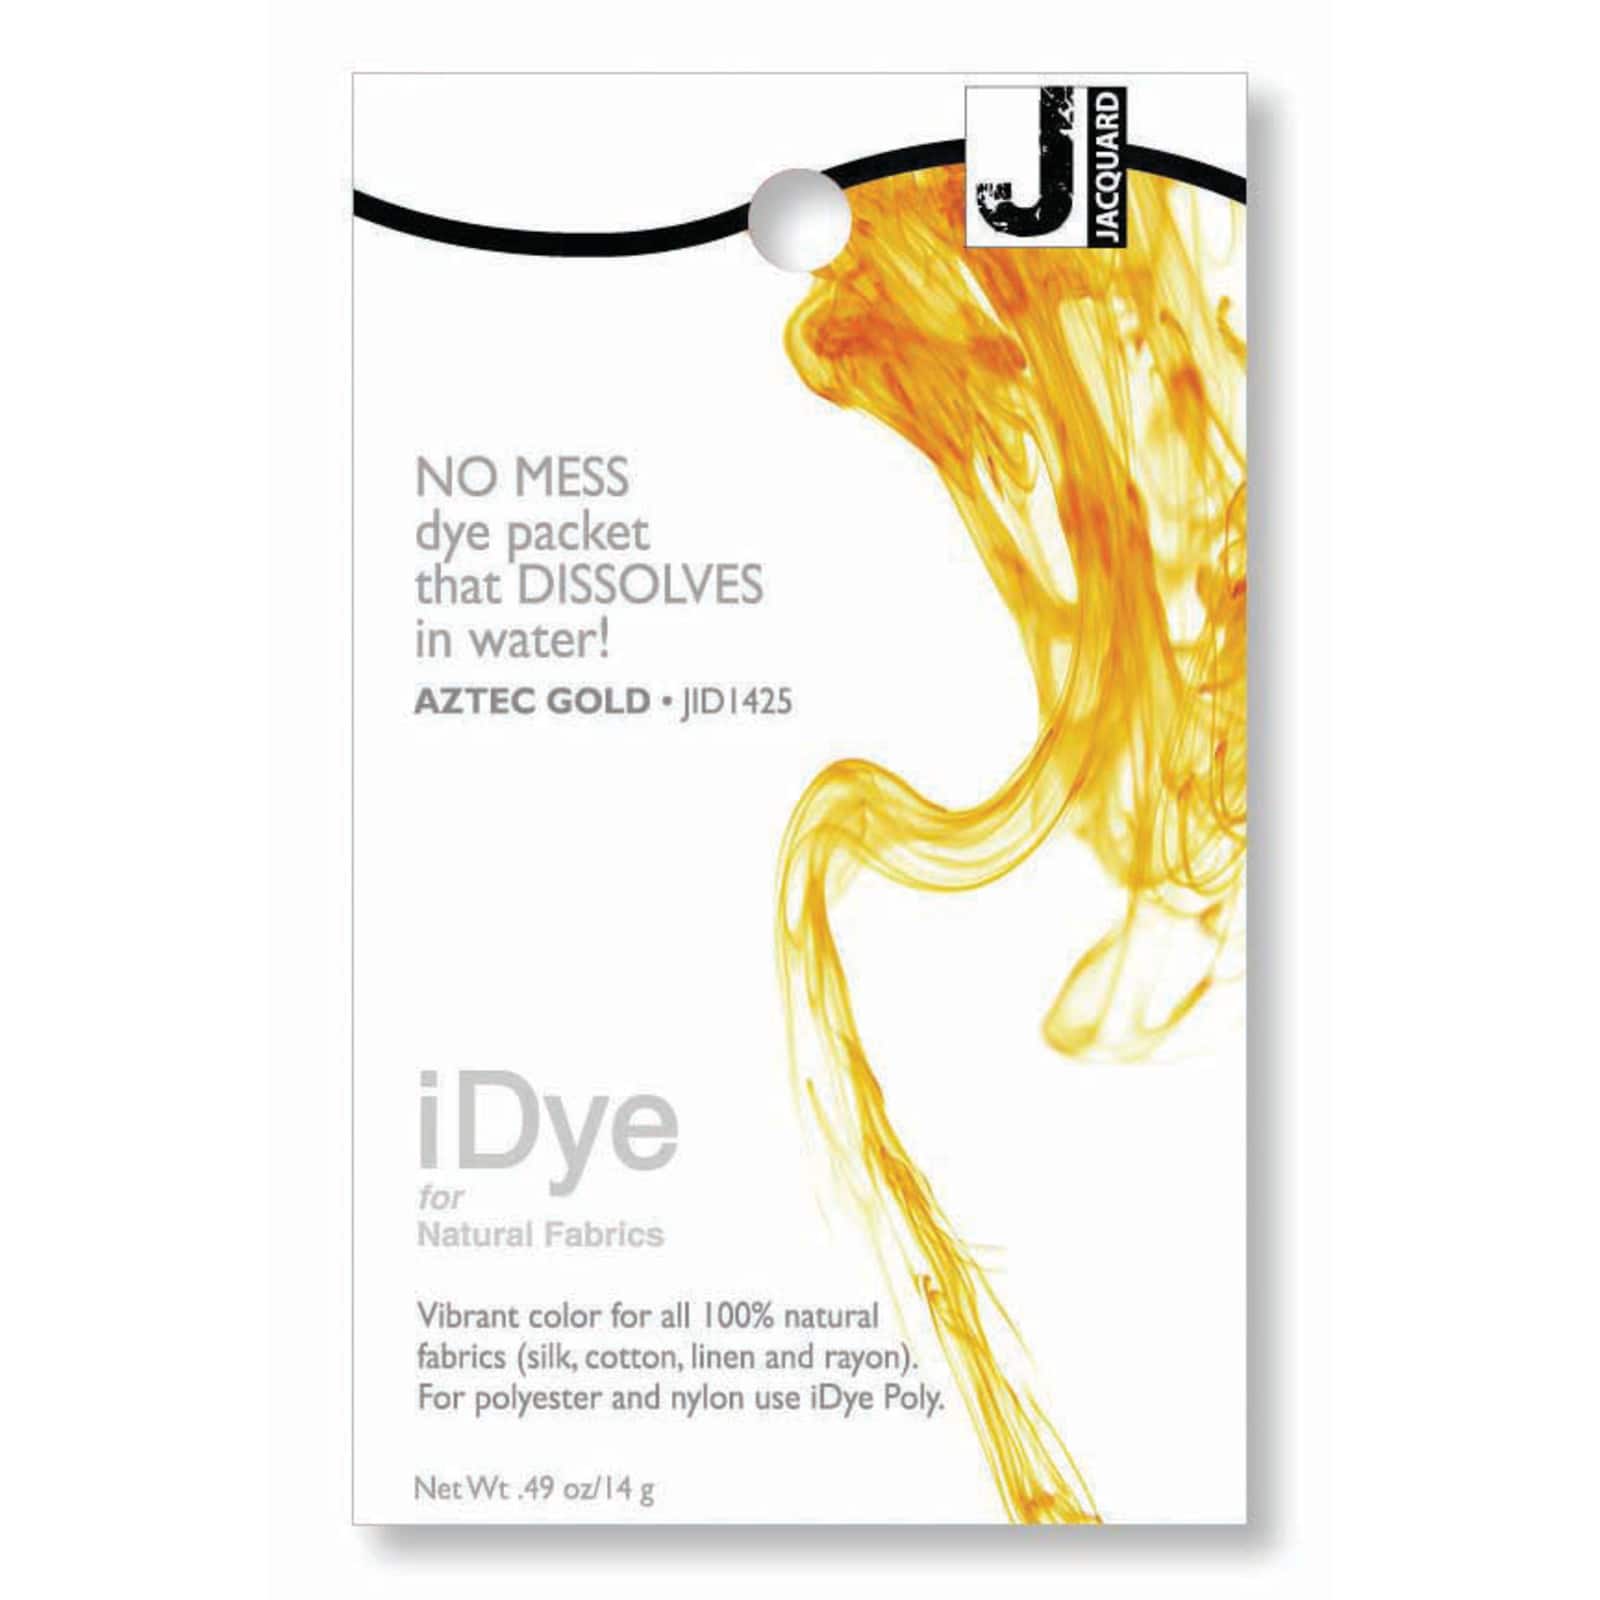 iDye, Fabric Dye, Jacquard, Natural Fabrics